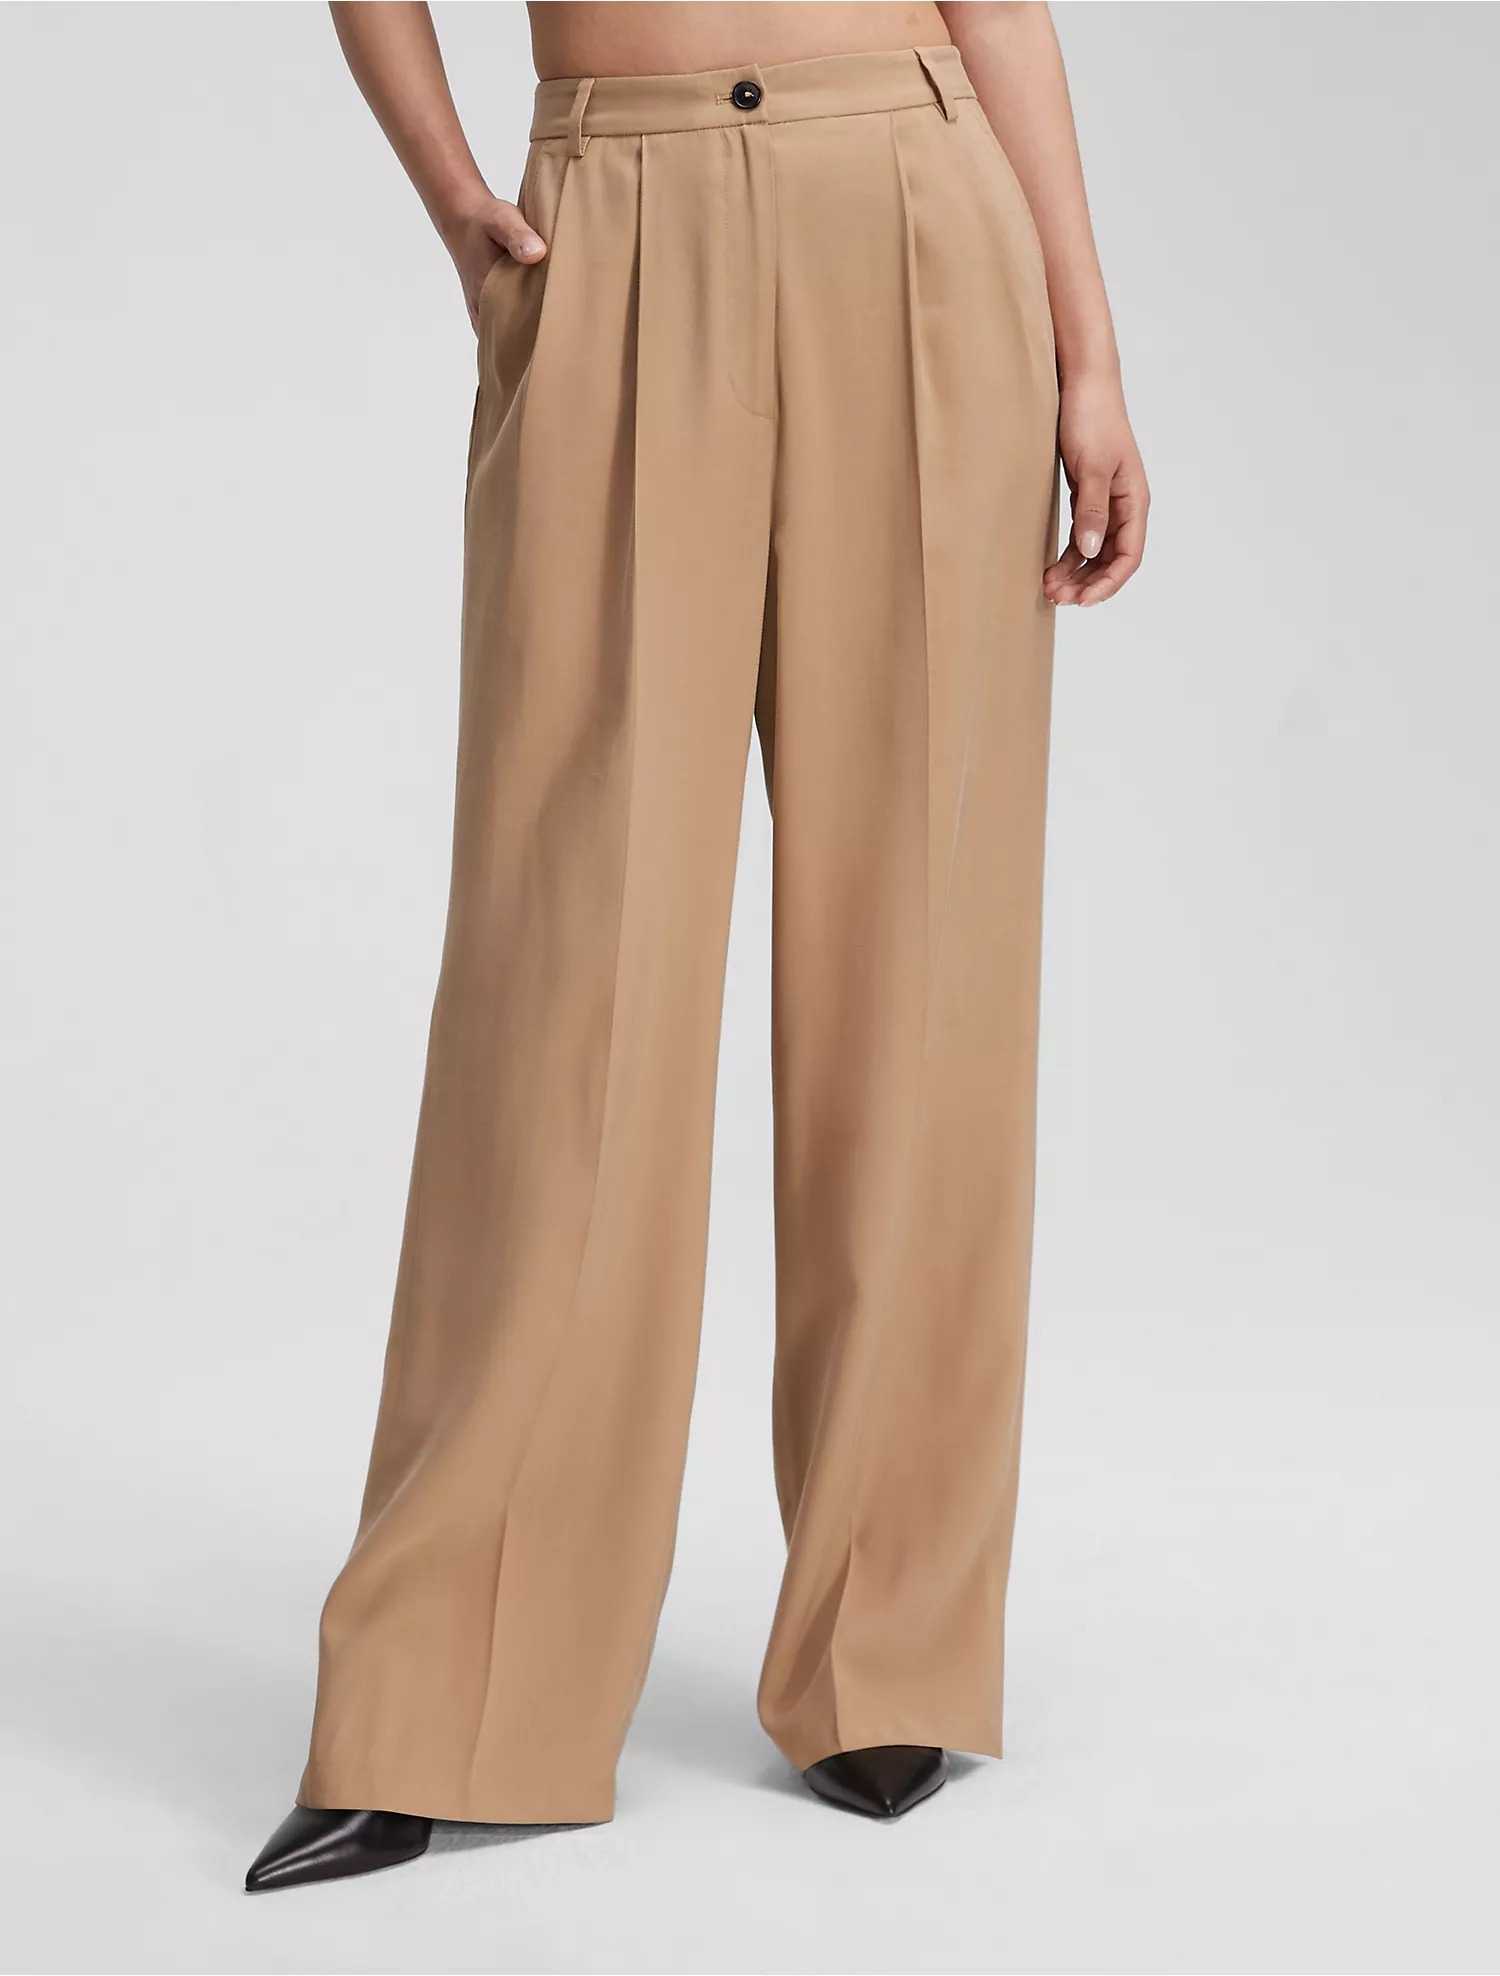 Брюки Calvin Klein Soft Twill Relaxed, бежевый брюки женские прямые с завышенной талией базовые цветные непрозрачные драпированные повседневные белые брюки с широкими штанинами подхо